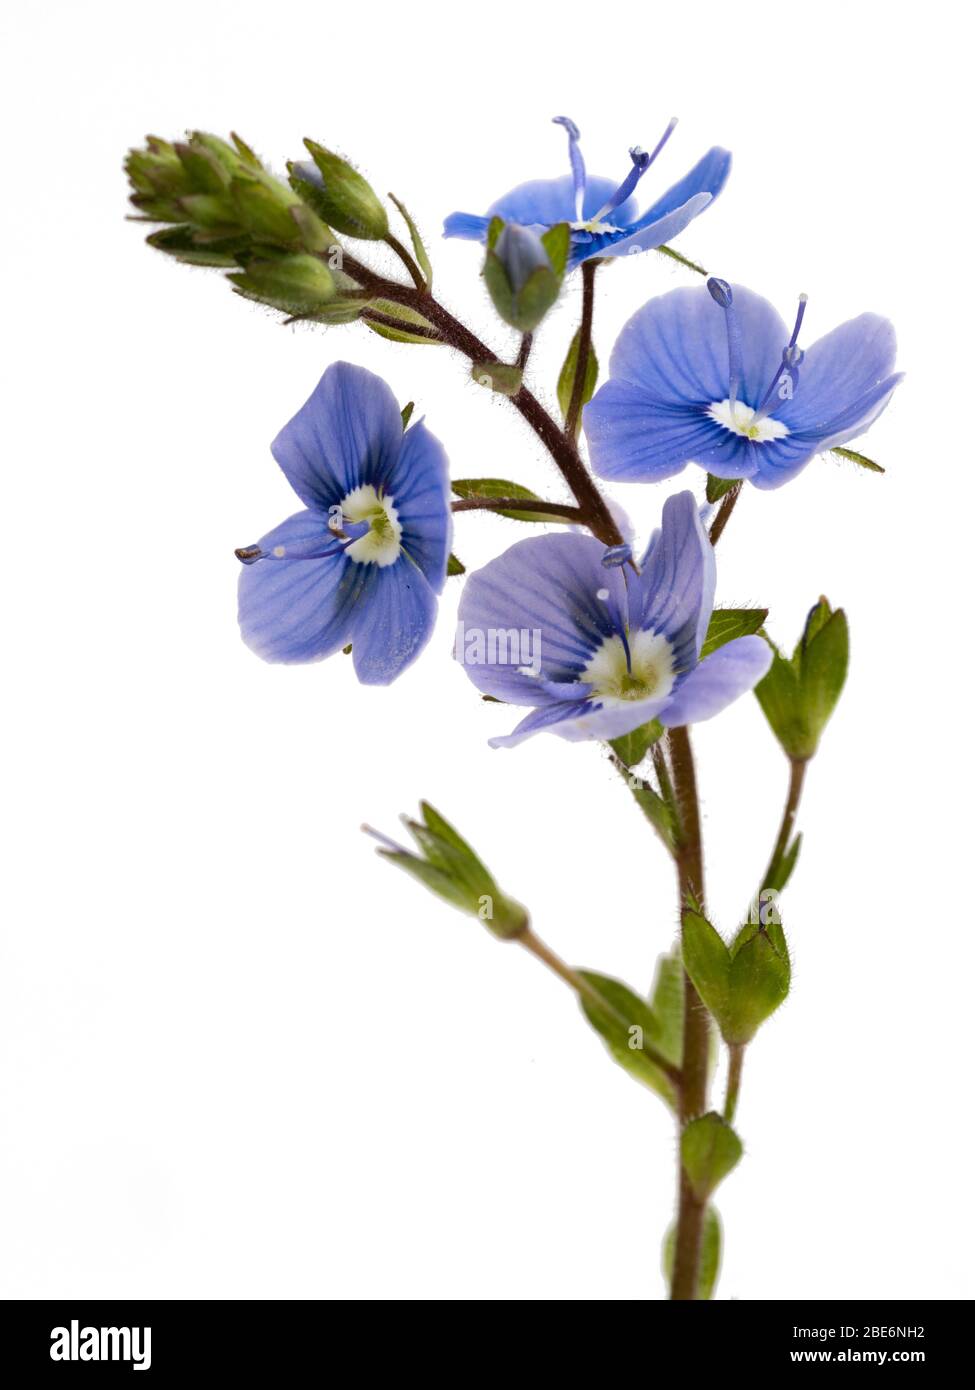 Tallo y pequeñas flores azules de la flor silvestre del Reino Unido, germander speedwell, Veronica chamaedrys, sobre un fondo blanco Foto de stock